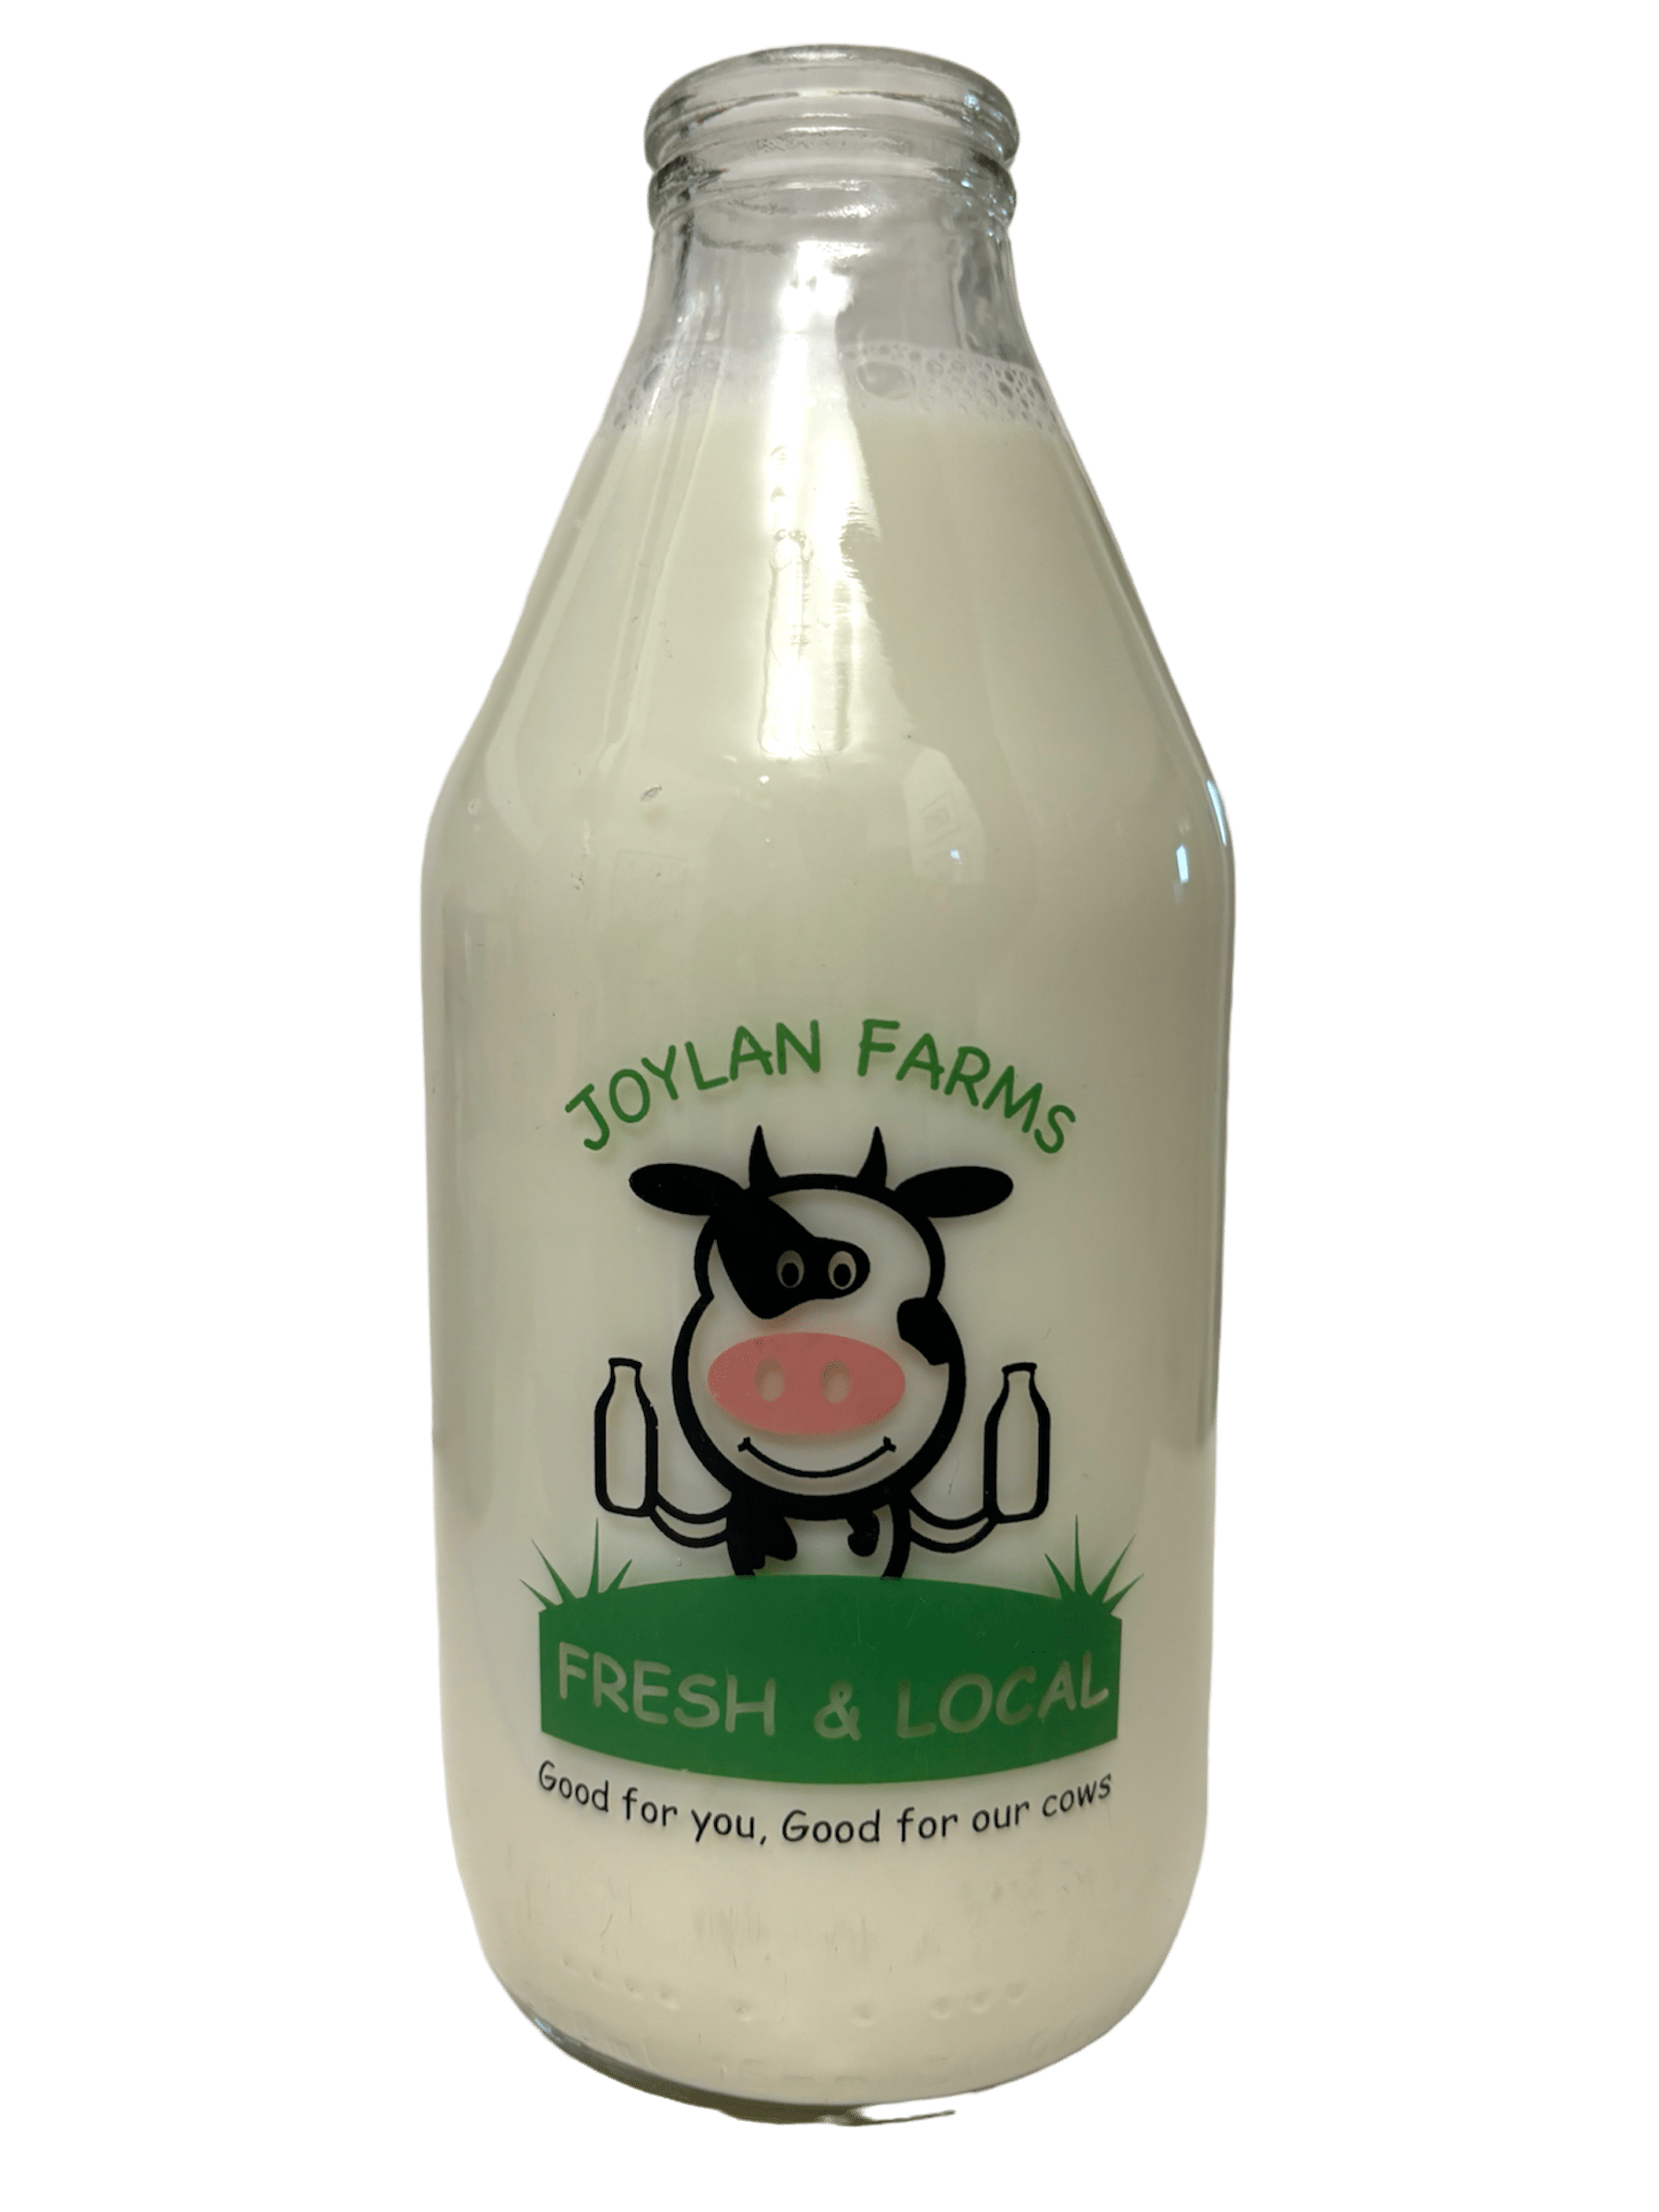 Joylan Farms - www.Kelis.info #KelisTheBottleBank